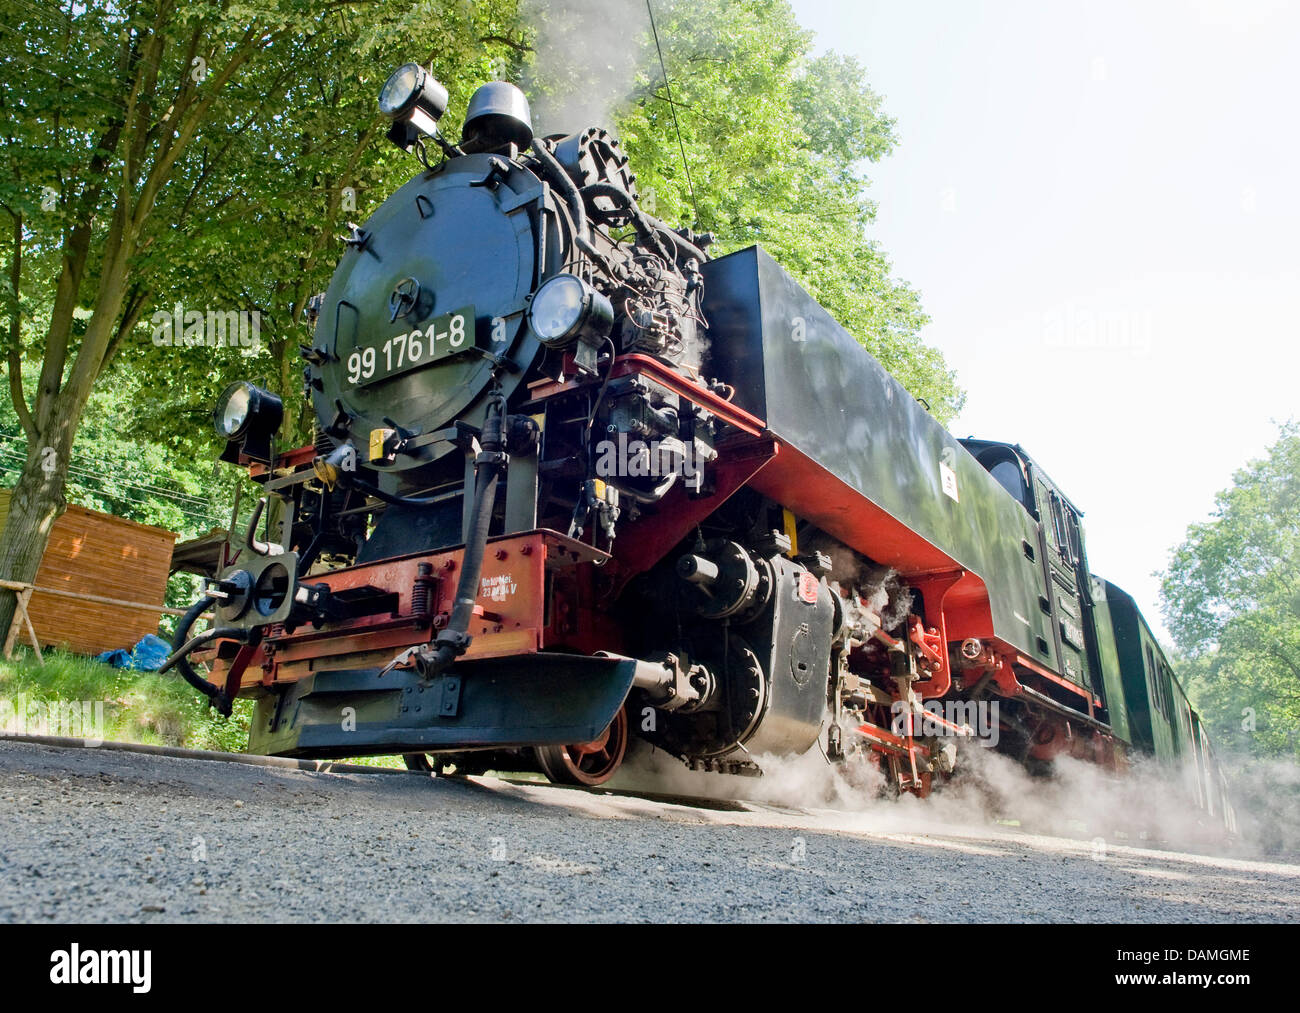 Le chemin de fer de la vallée de Loessnitz à travers Radebeul, Allemagne, 25 mai 2011. Que la Saxe's quatrième de fer à voie étroite qu'il a été en service depuis 1884 et s'est connecté et Radebeul Radeburg depuis. Photo : Martin Foerster Banque D'Images